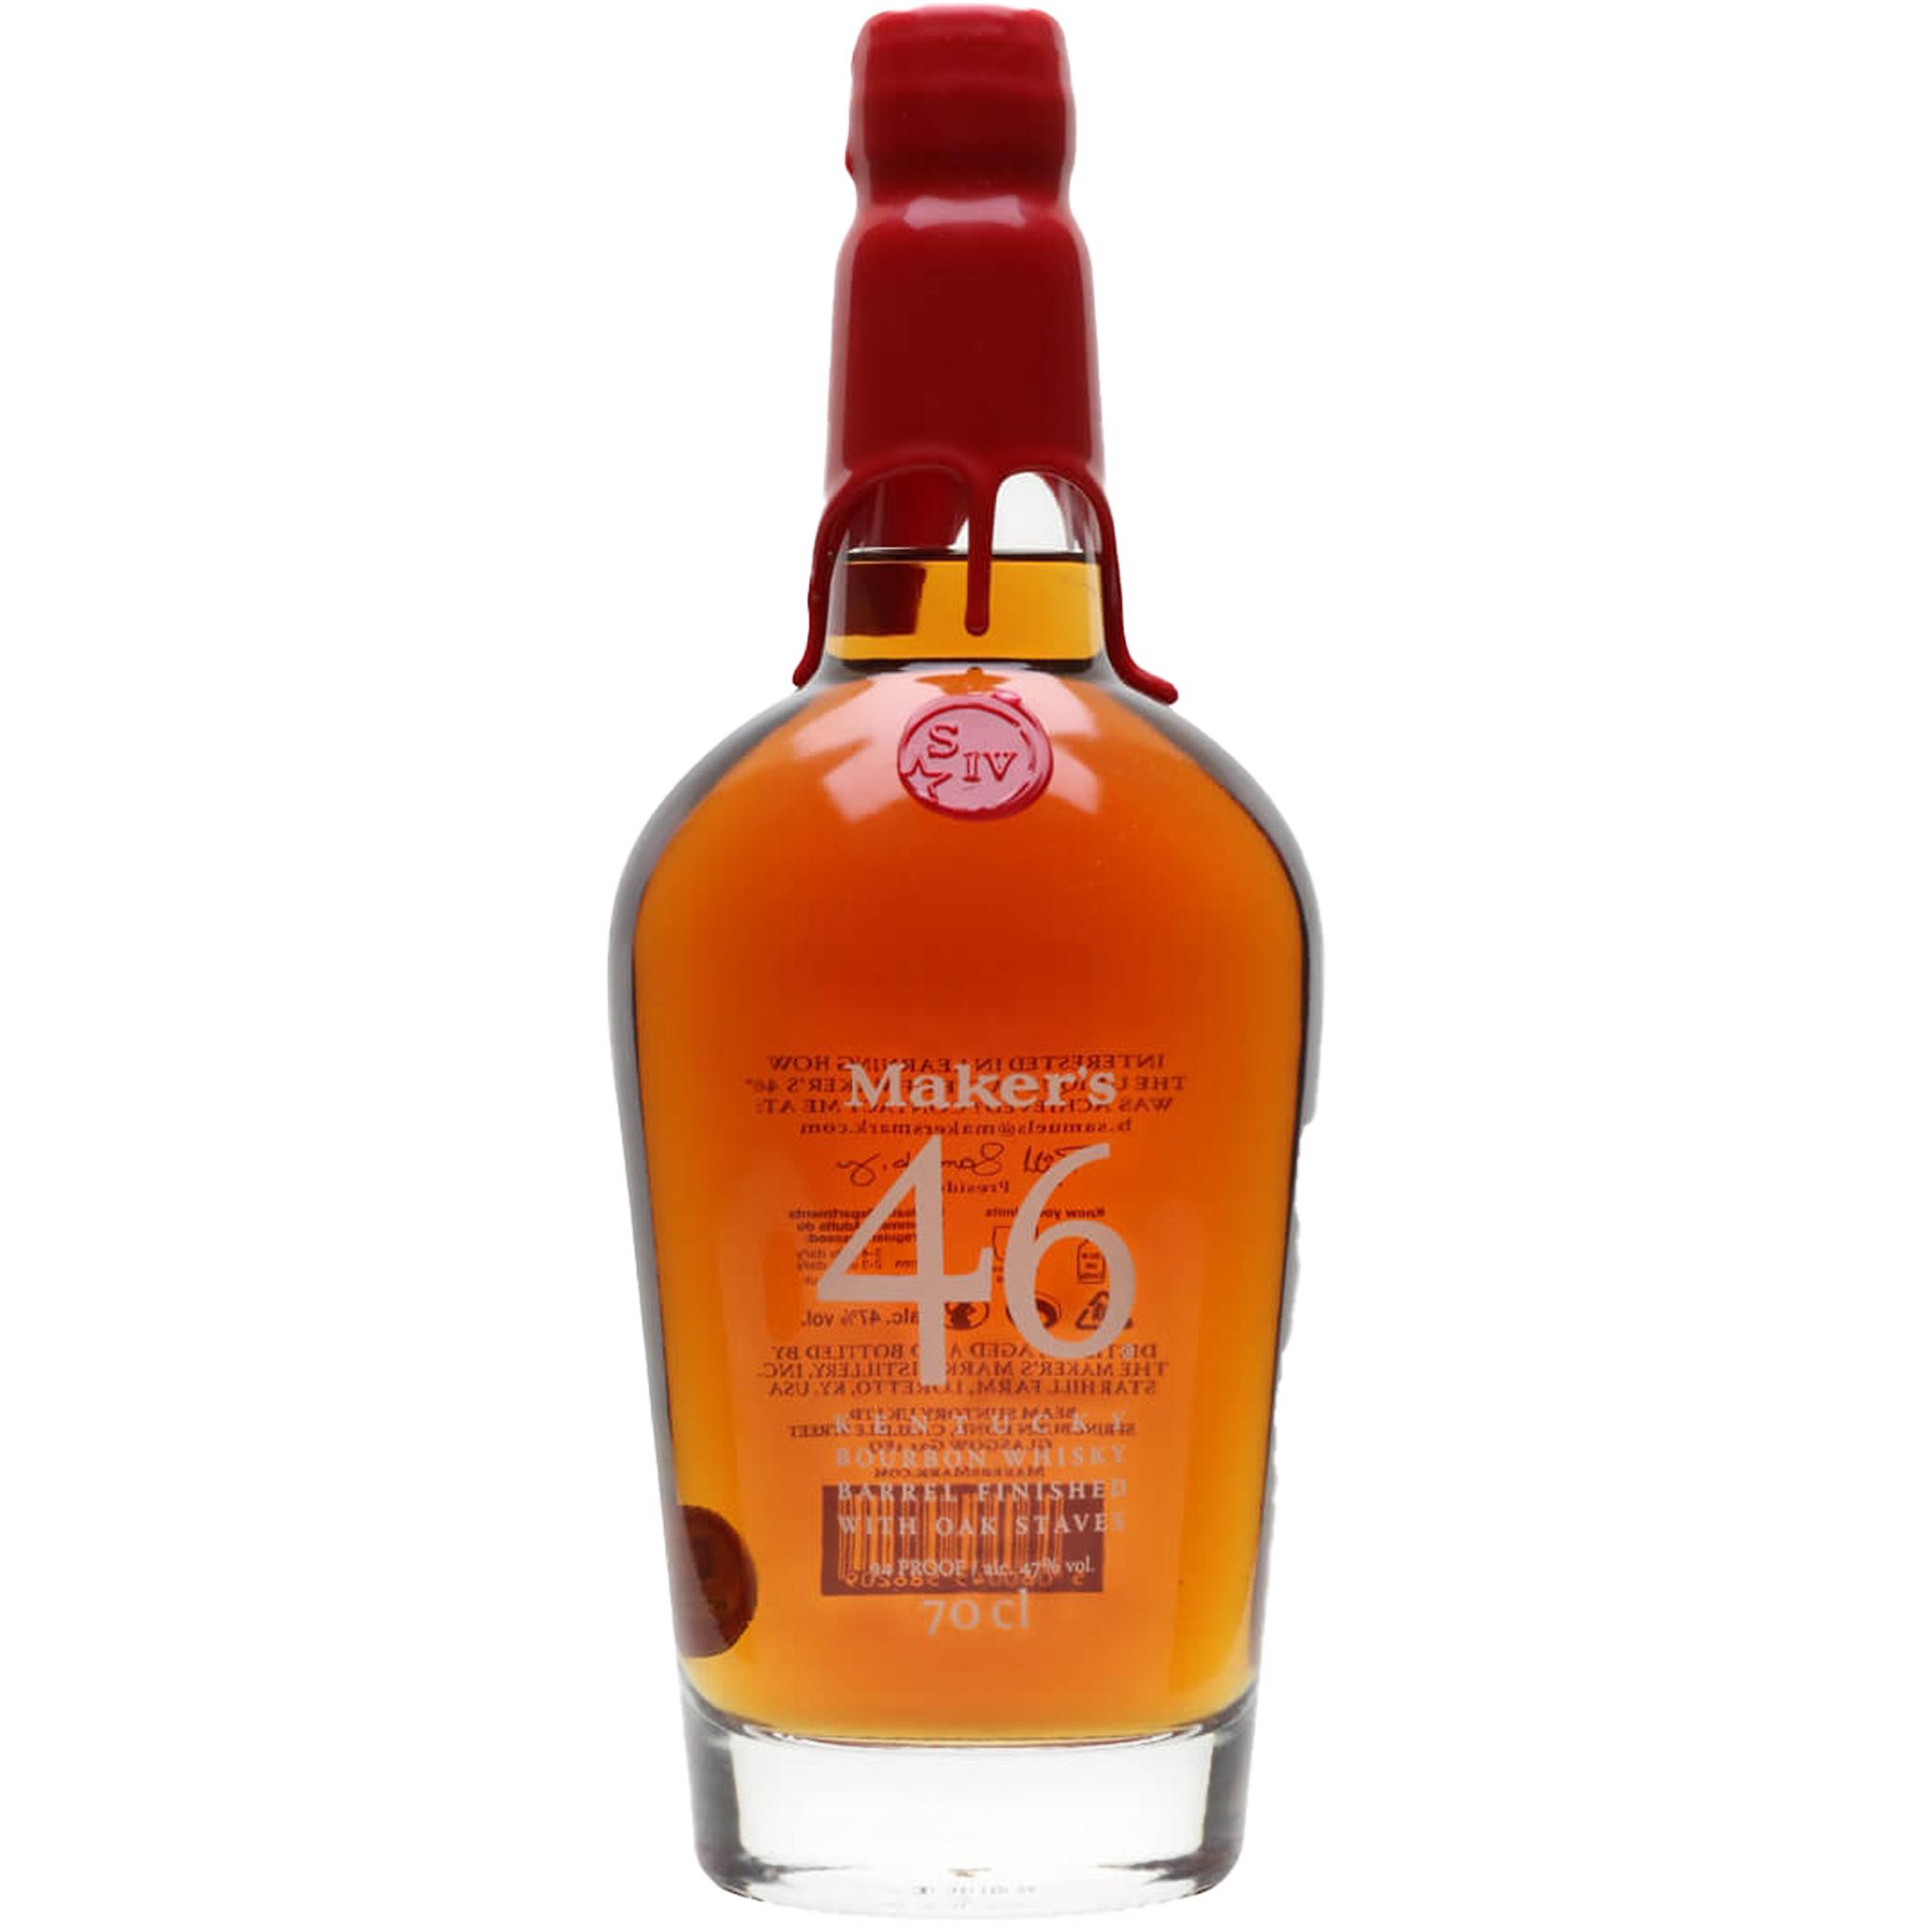 Maker's 46 Kentucky Bourbon Whiskey